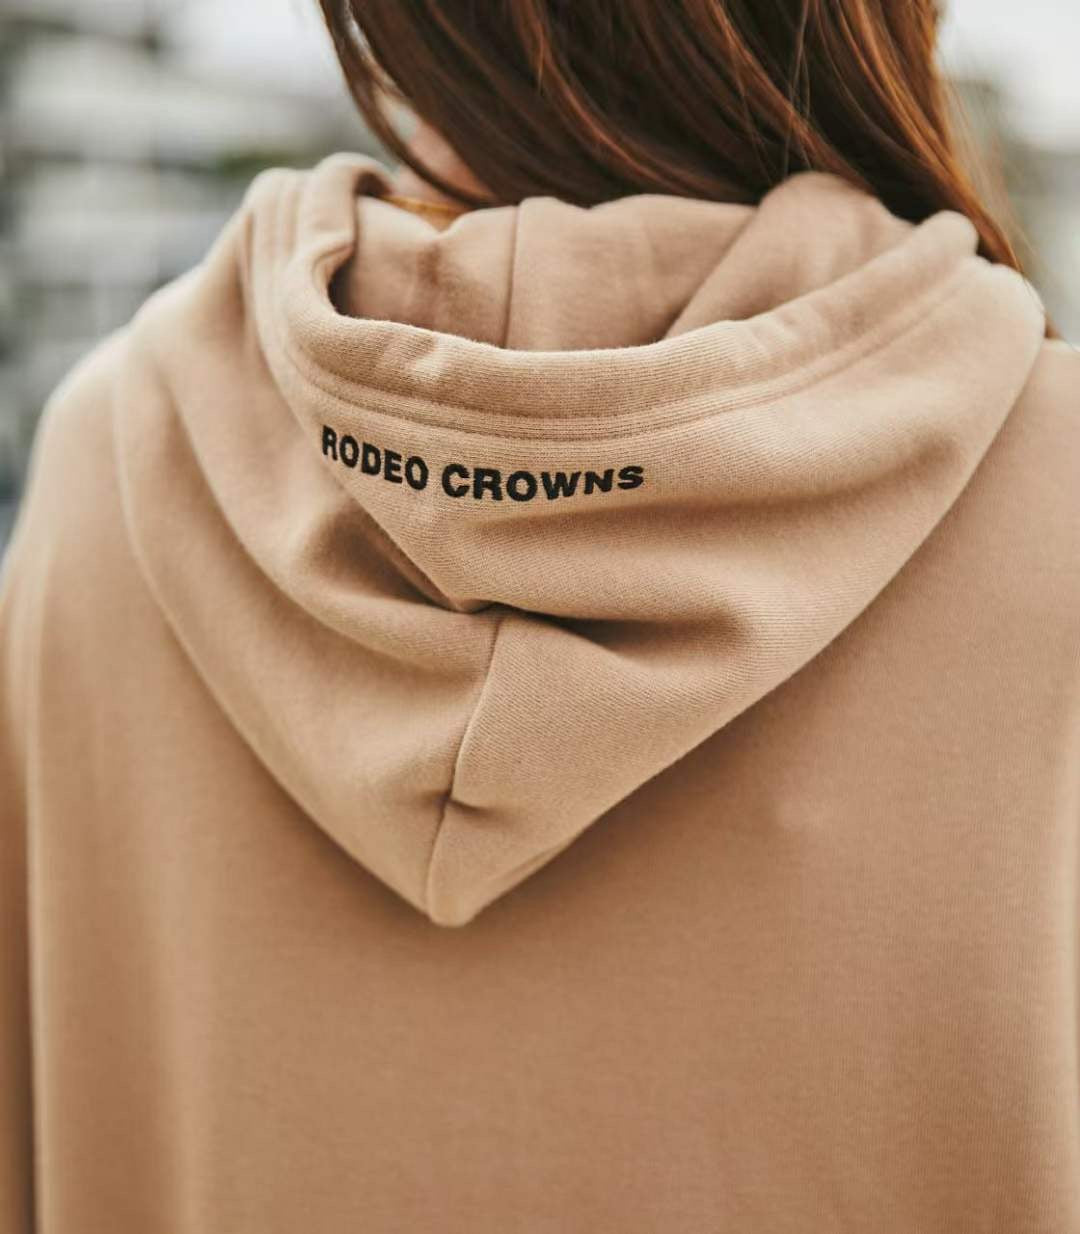 Rodeo crowns hoodies